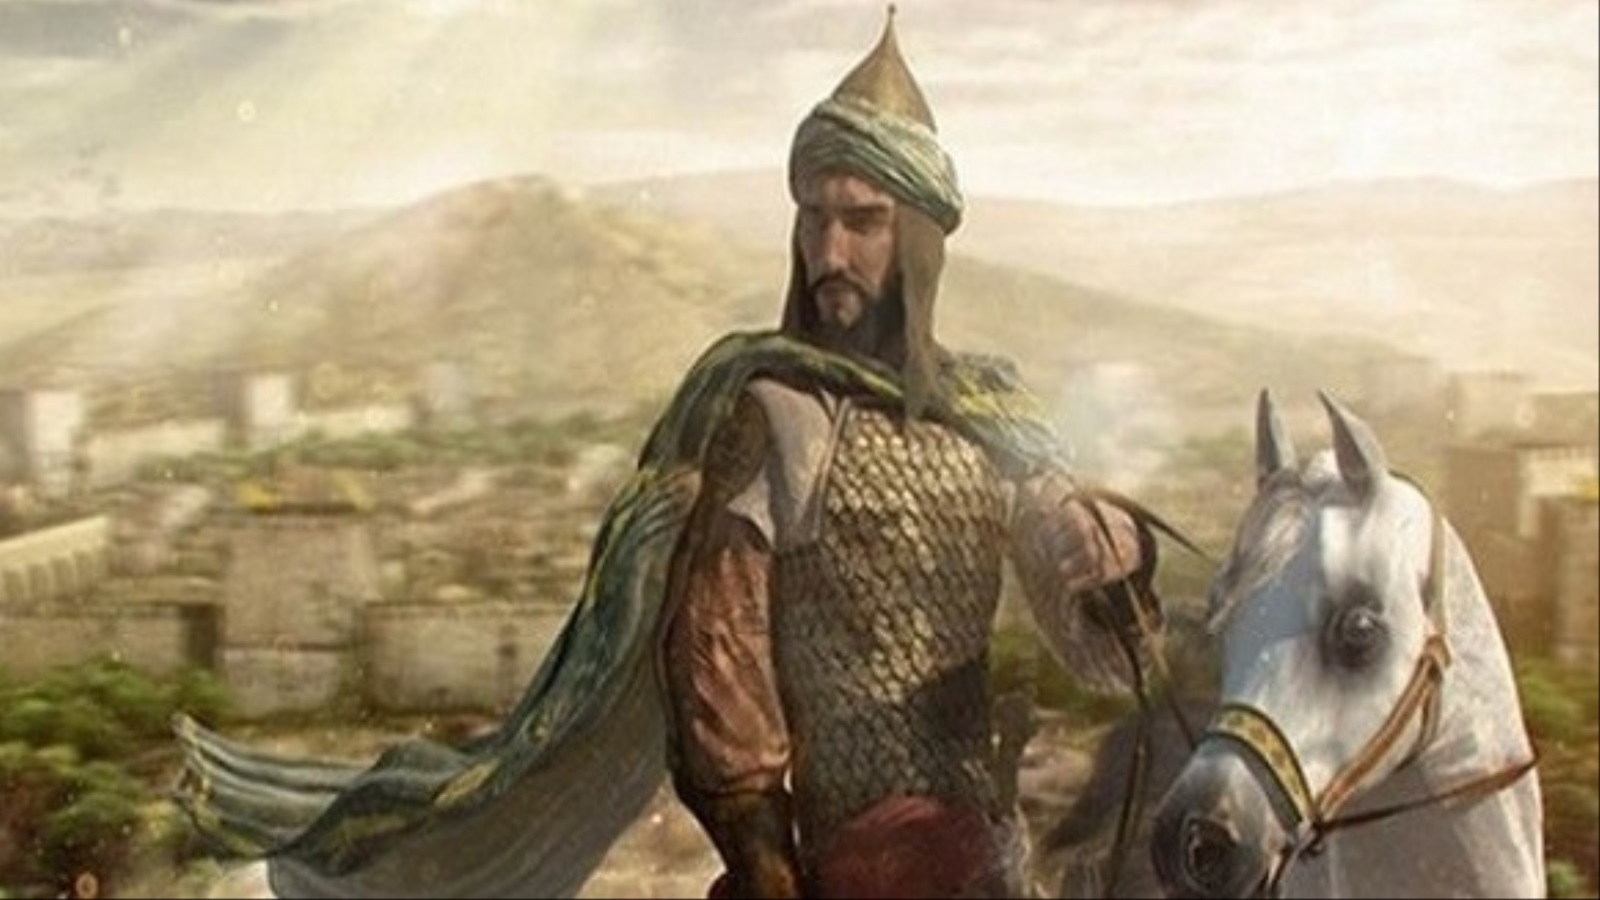 انتصر صلاح الدين وجيشه في معركة حطين 4/7/1187م، وأنهوا بذلك قوة الصليبيين وقضوا على آمال من تبقى منهم في المحافظة على احتلالهم لبيت المقدس